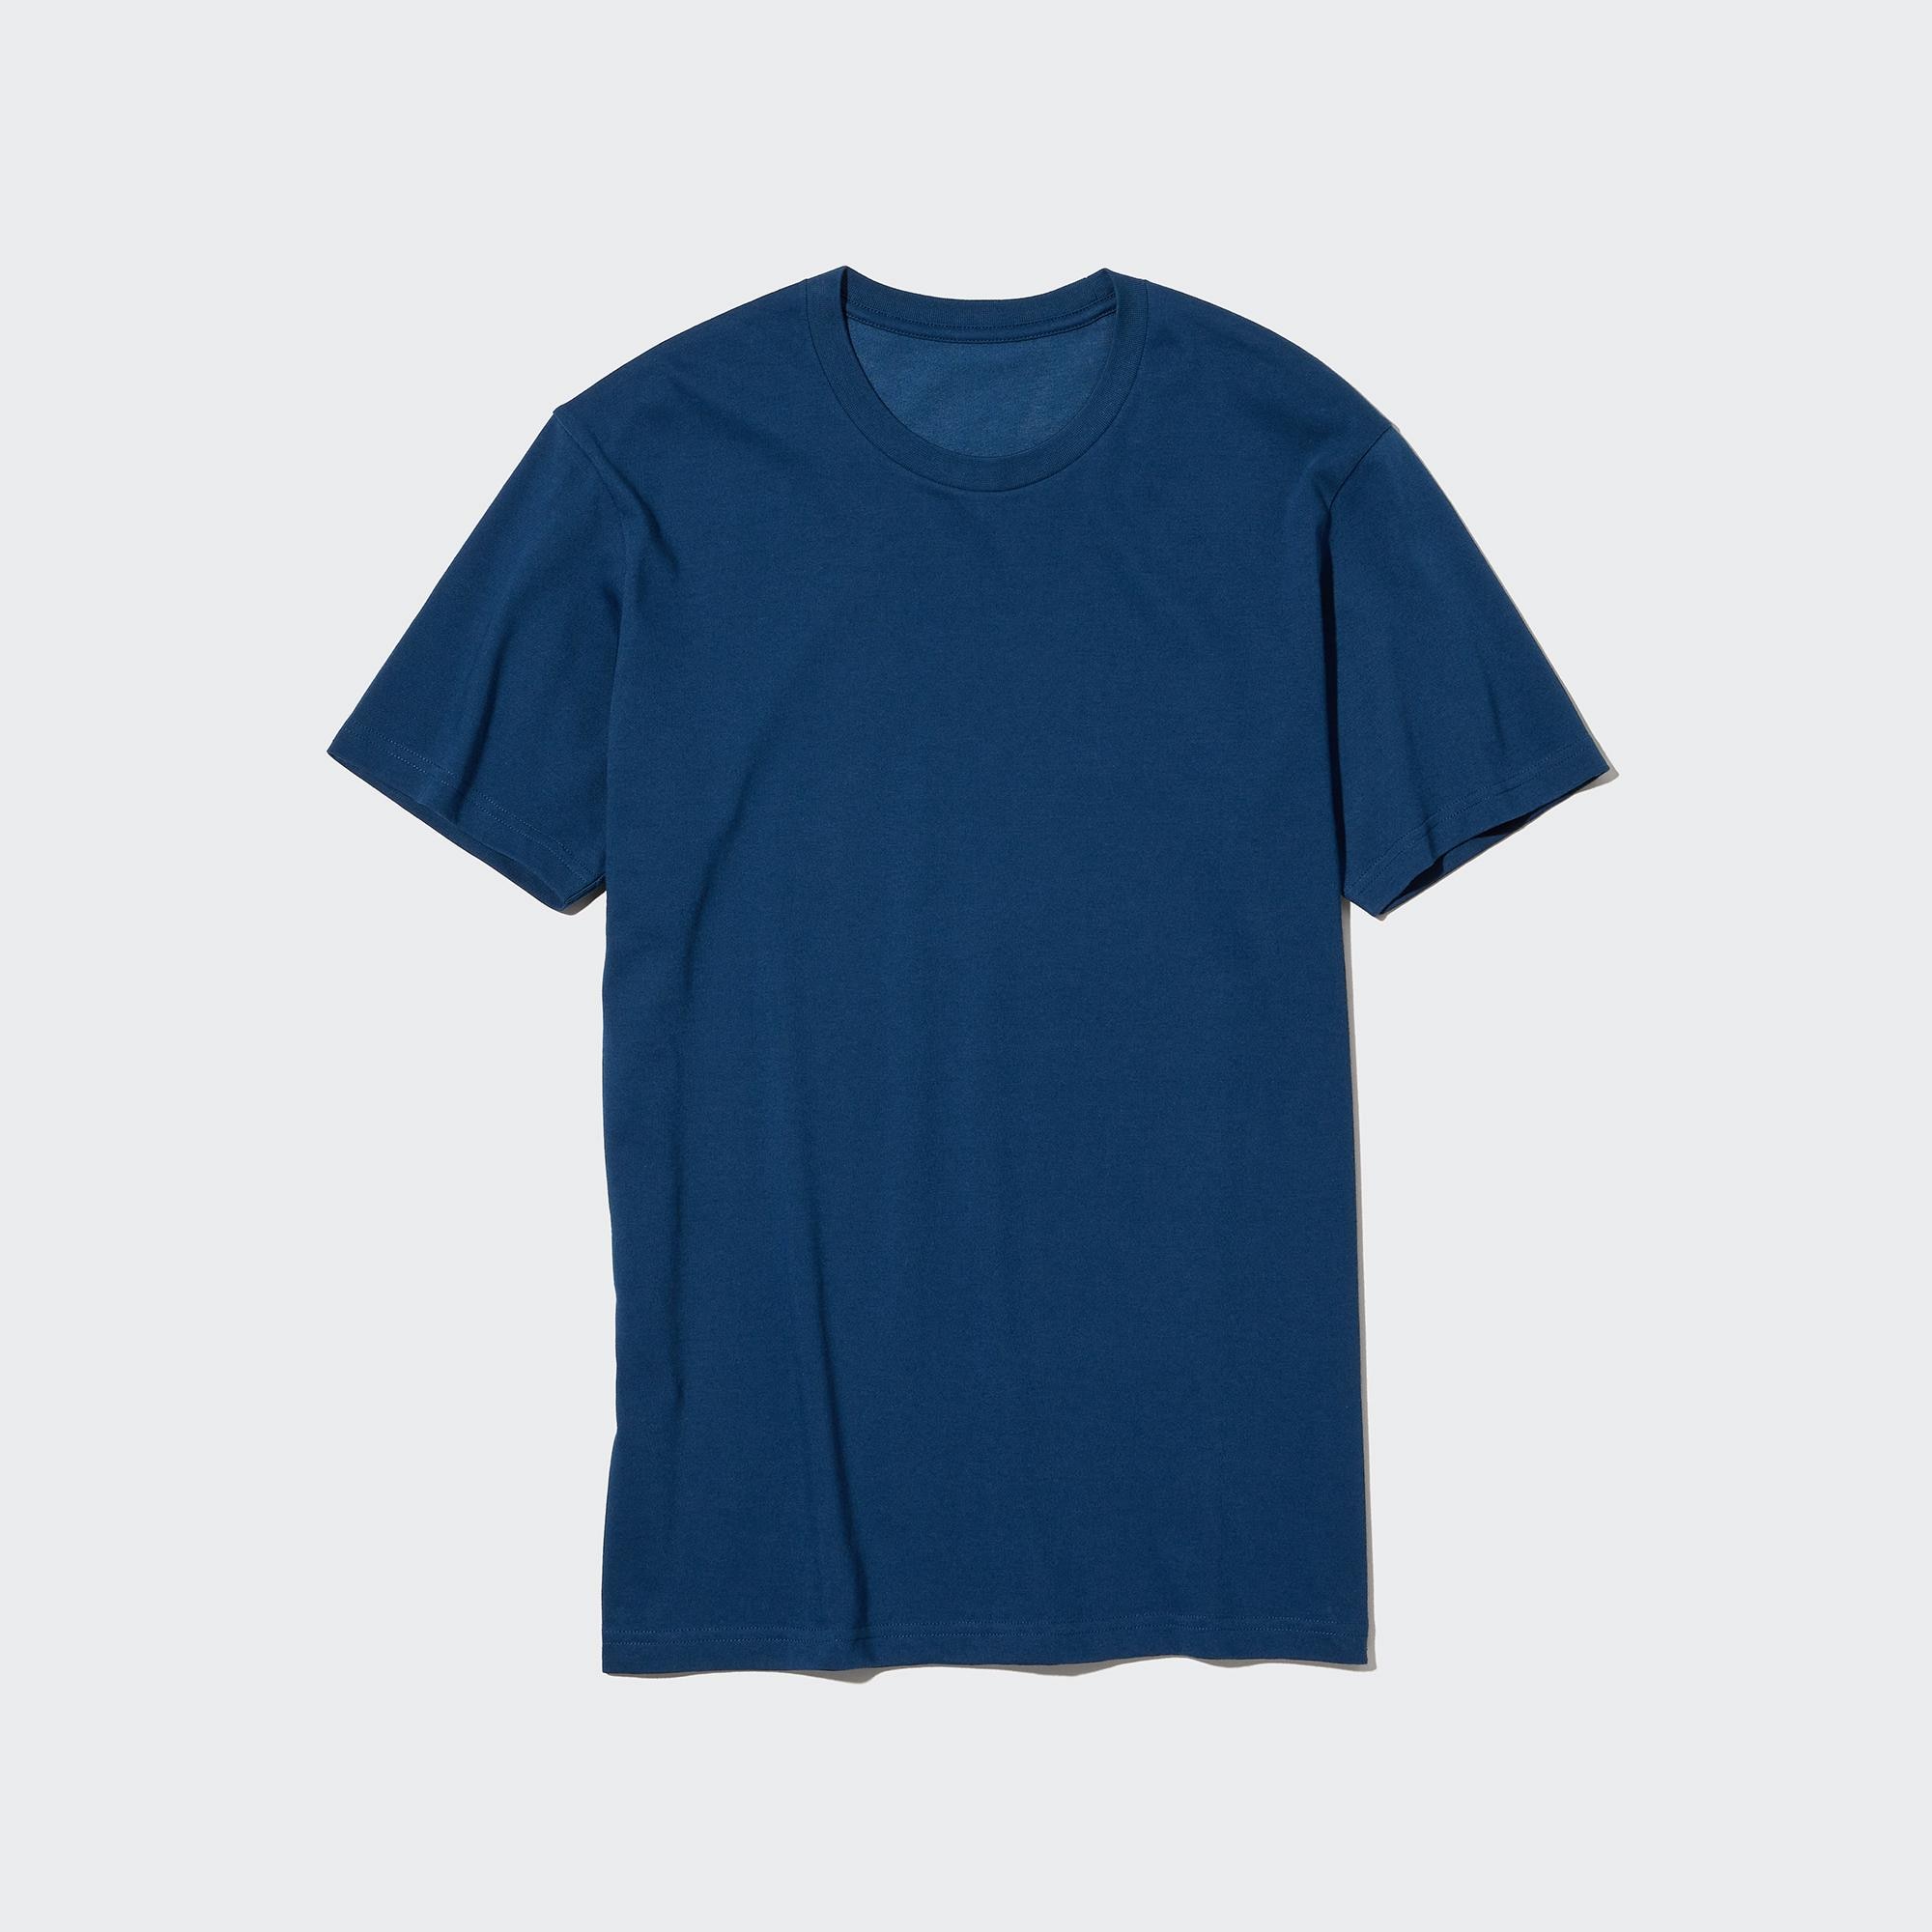 ユニクロ公式 | Tシャツ・カットソー(メンズ) (men) | ユニクロ